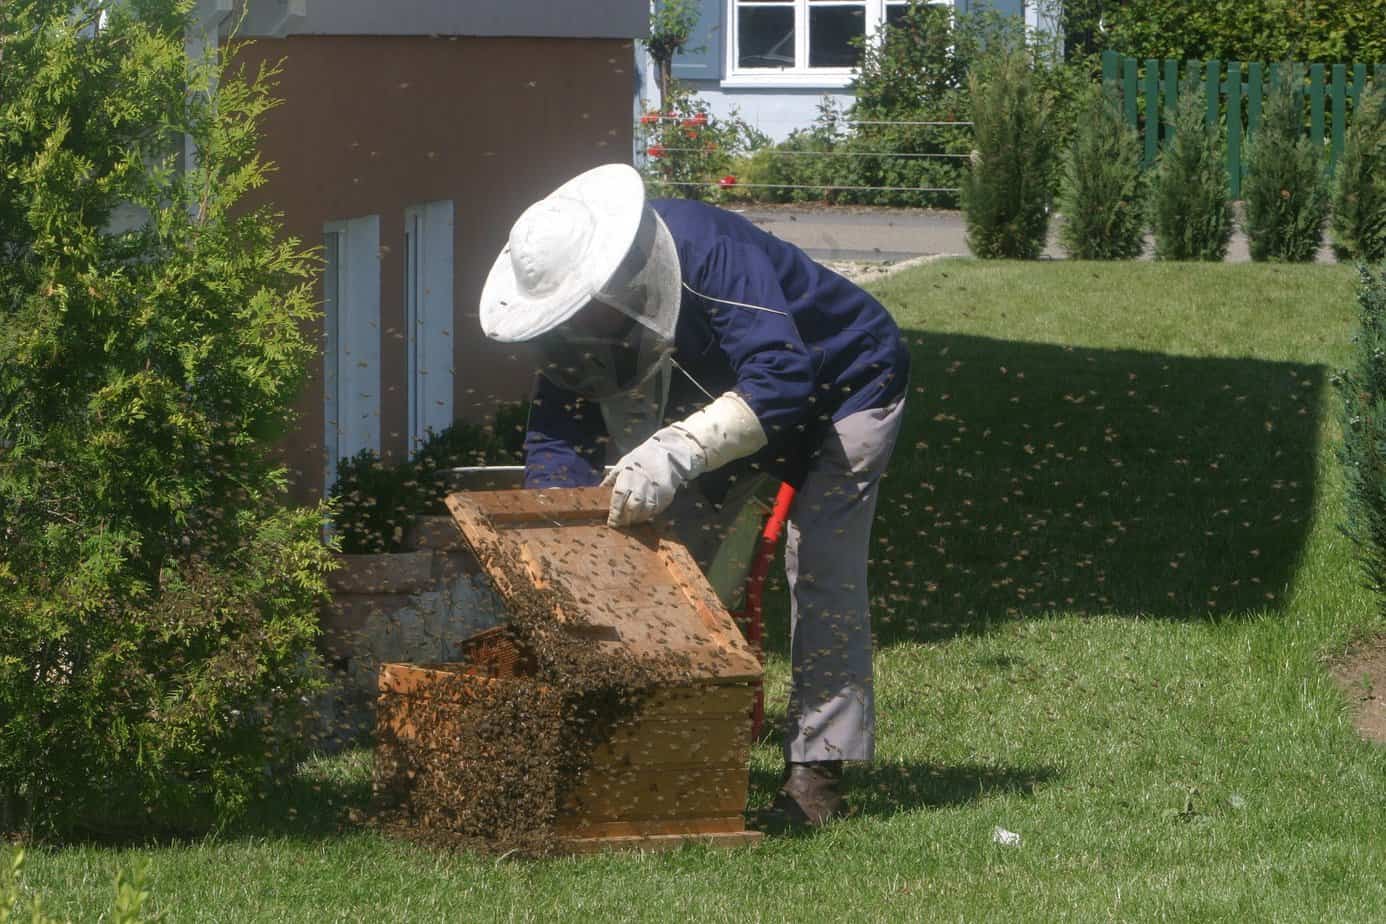 Comment réagir face à un essaim d'abeilles (espèce protégée) dans